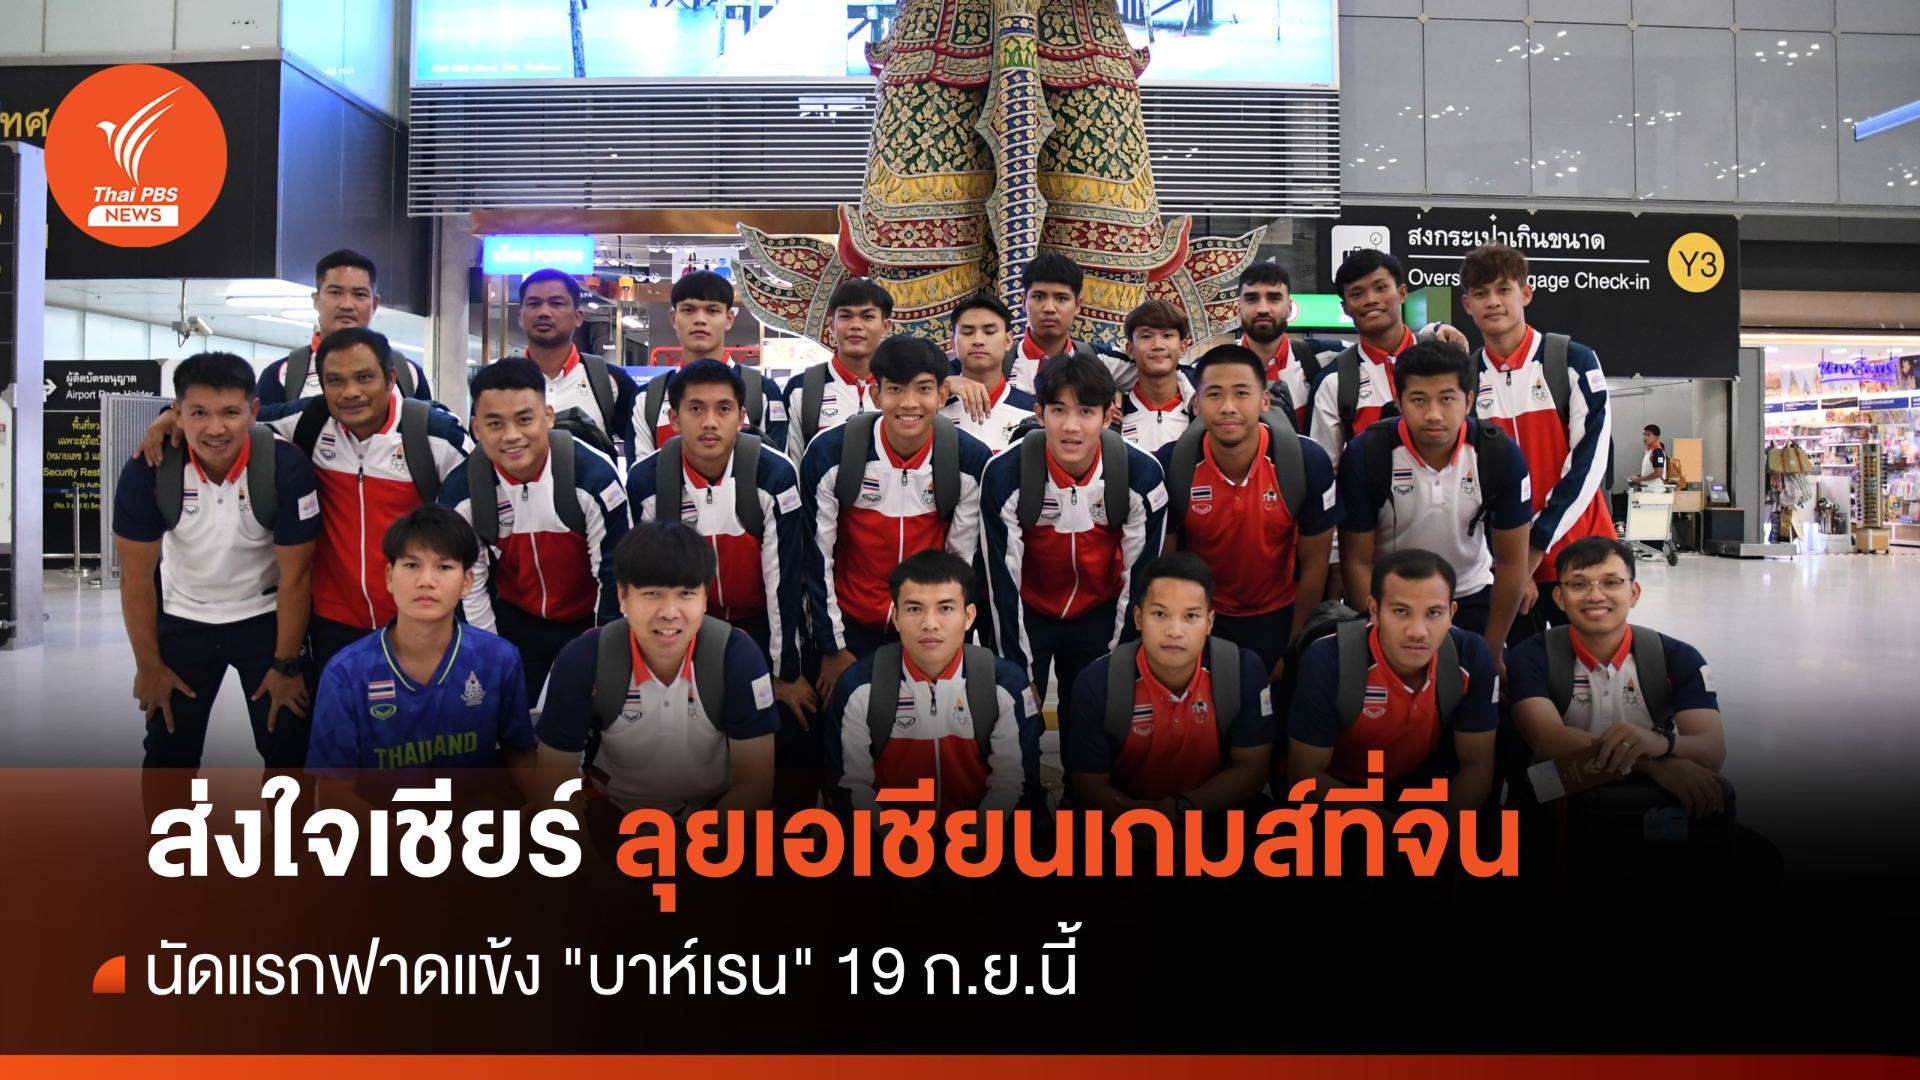 ส่งใจเชียร์! ทีมชาติไทย ลุยเอเชียนเกมส์ที่จีนนัดแรก "บาห์เรน"